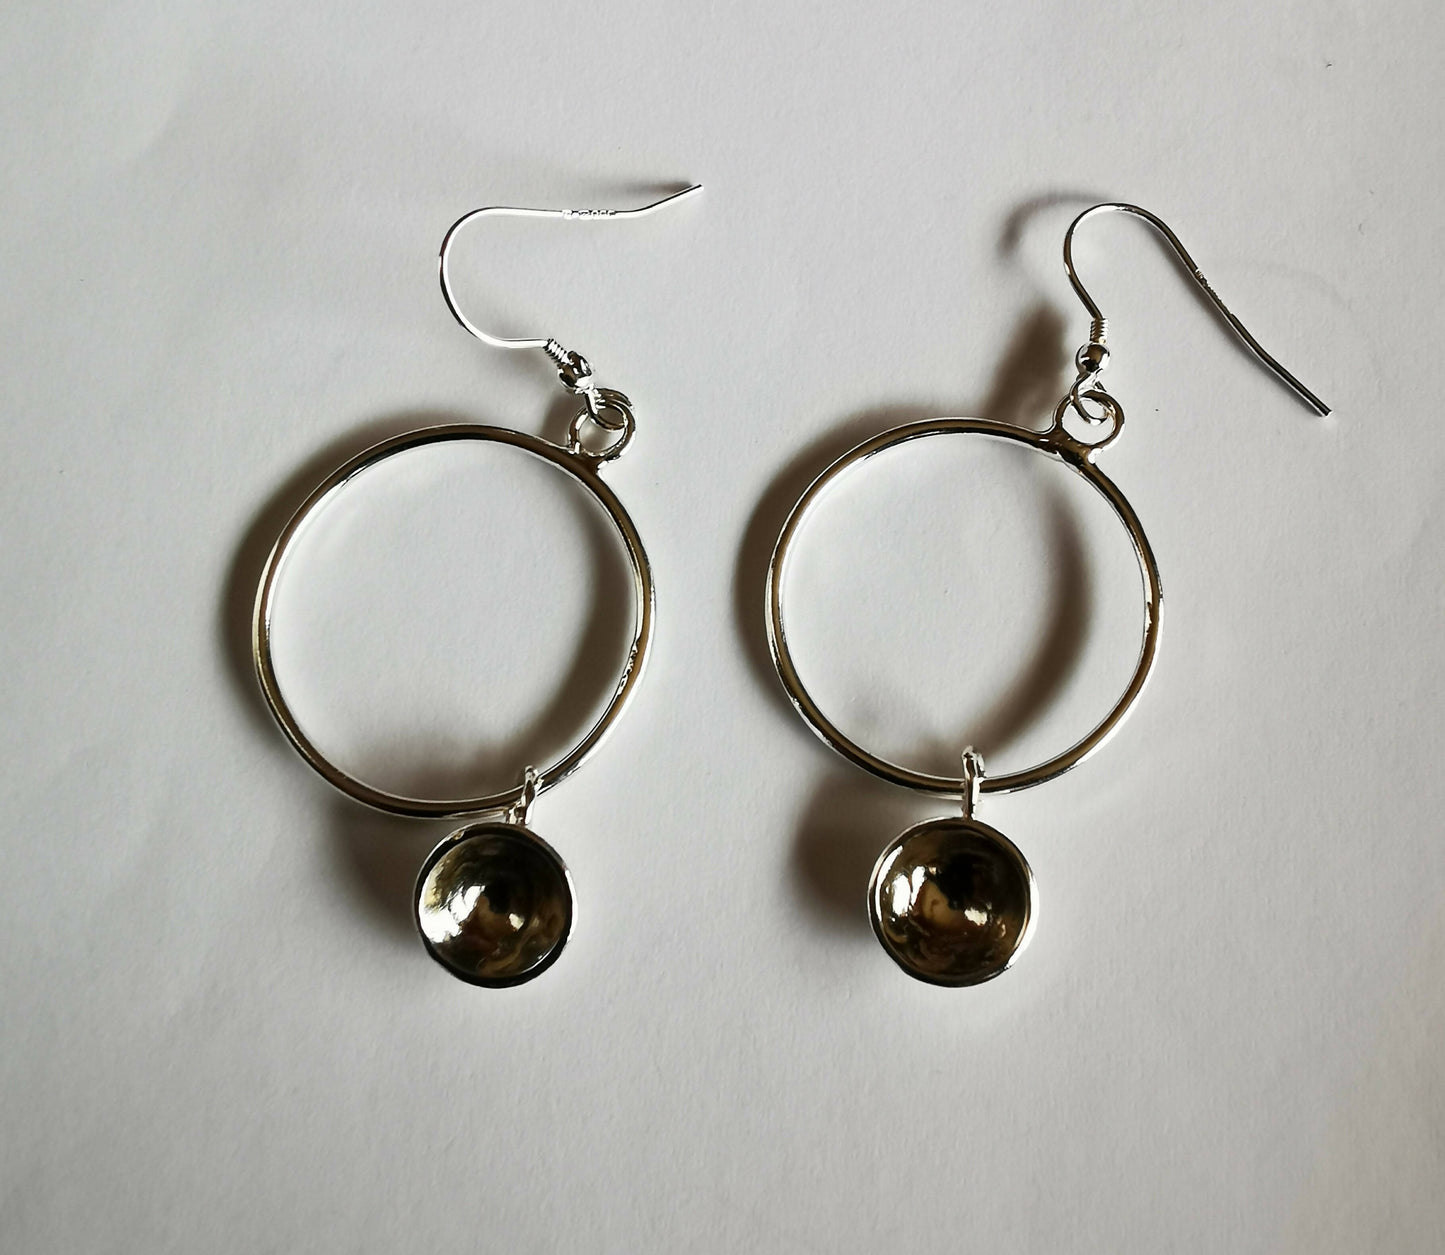 Large hooped earrings